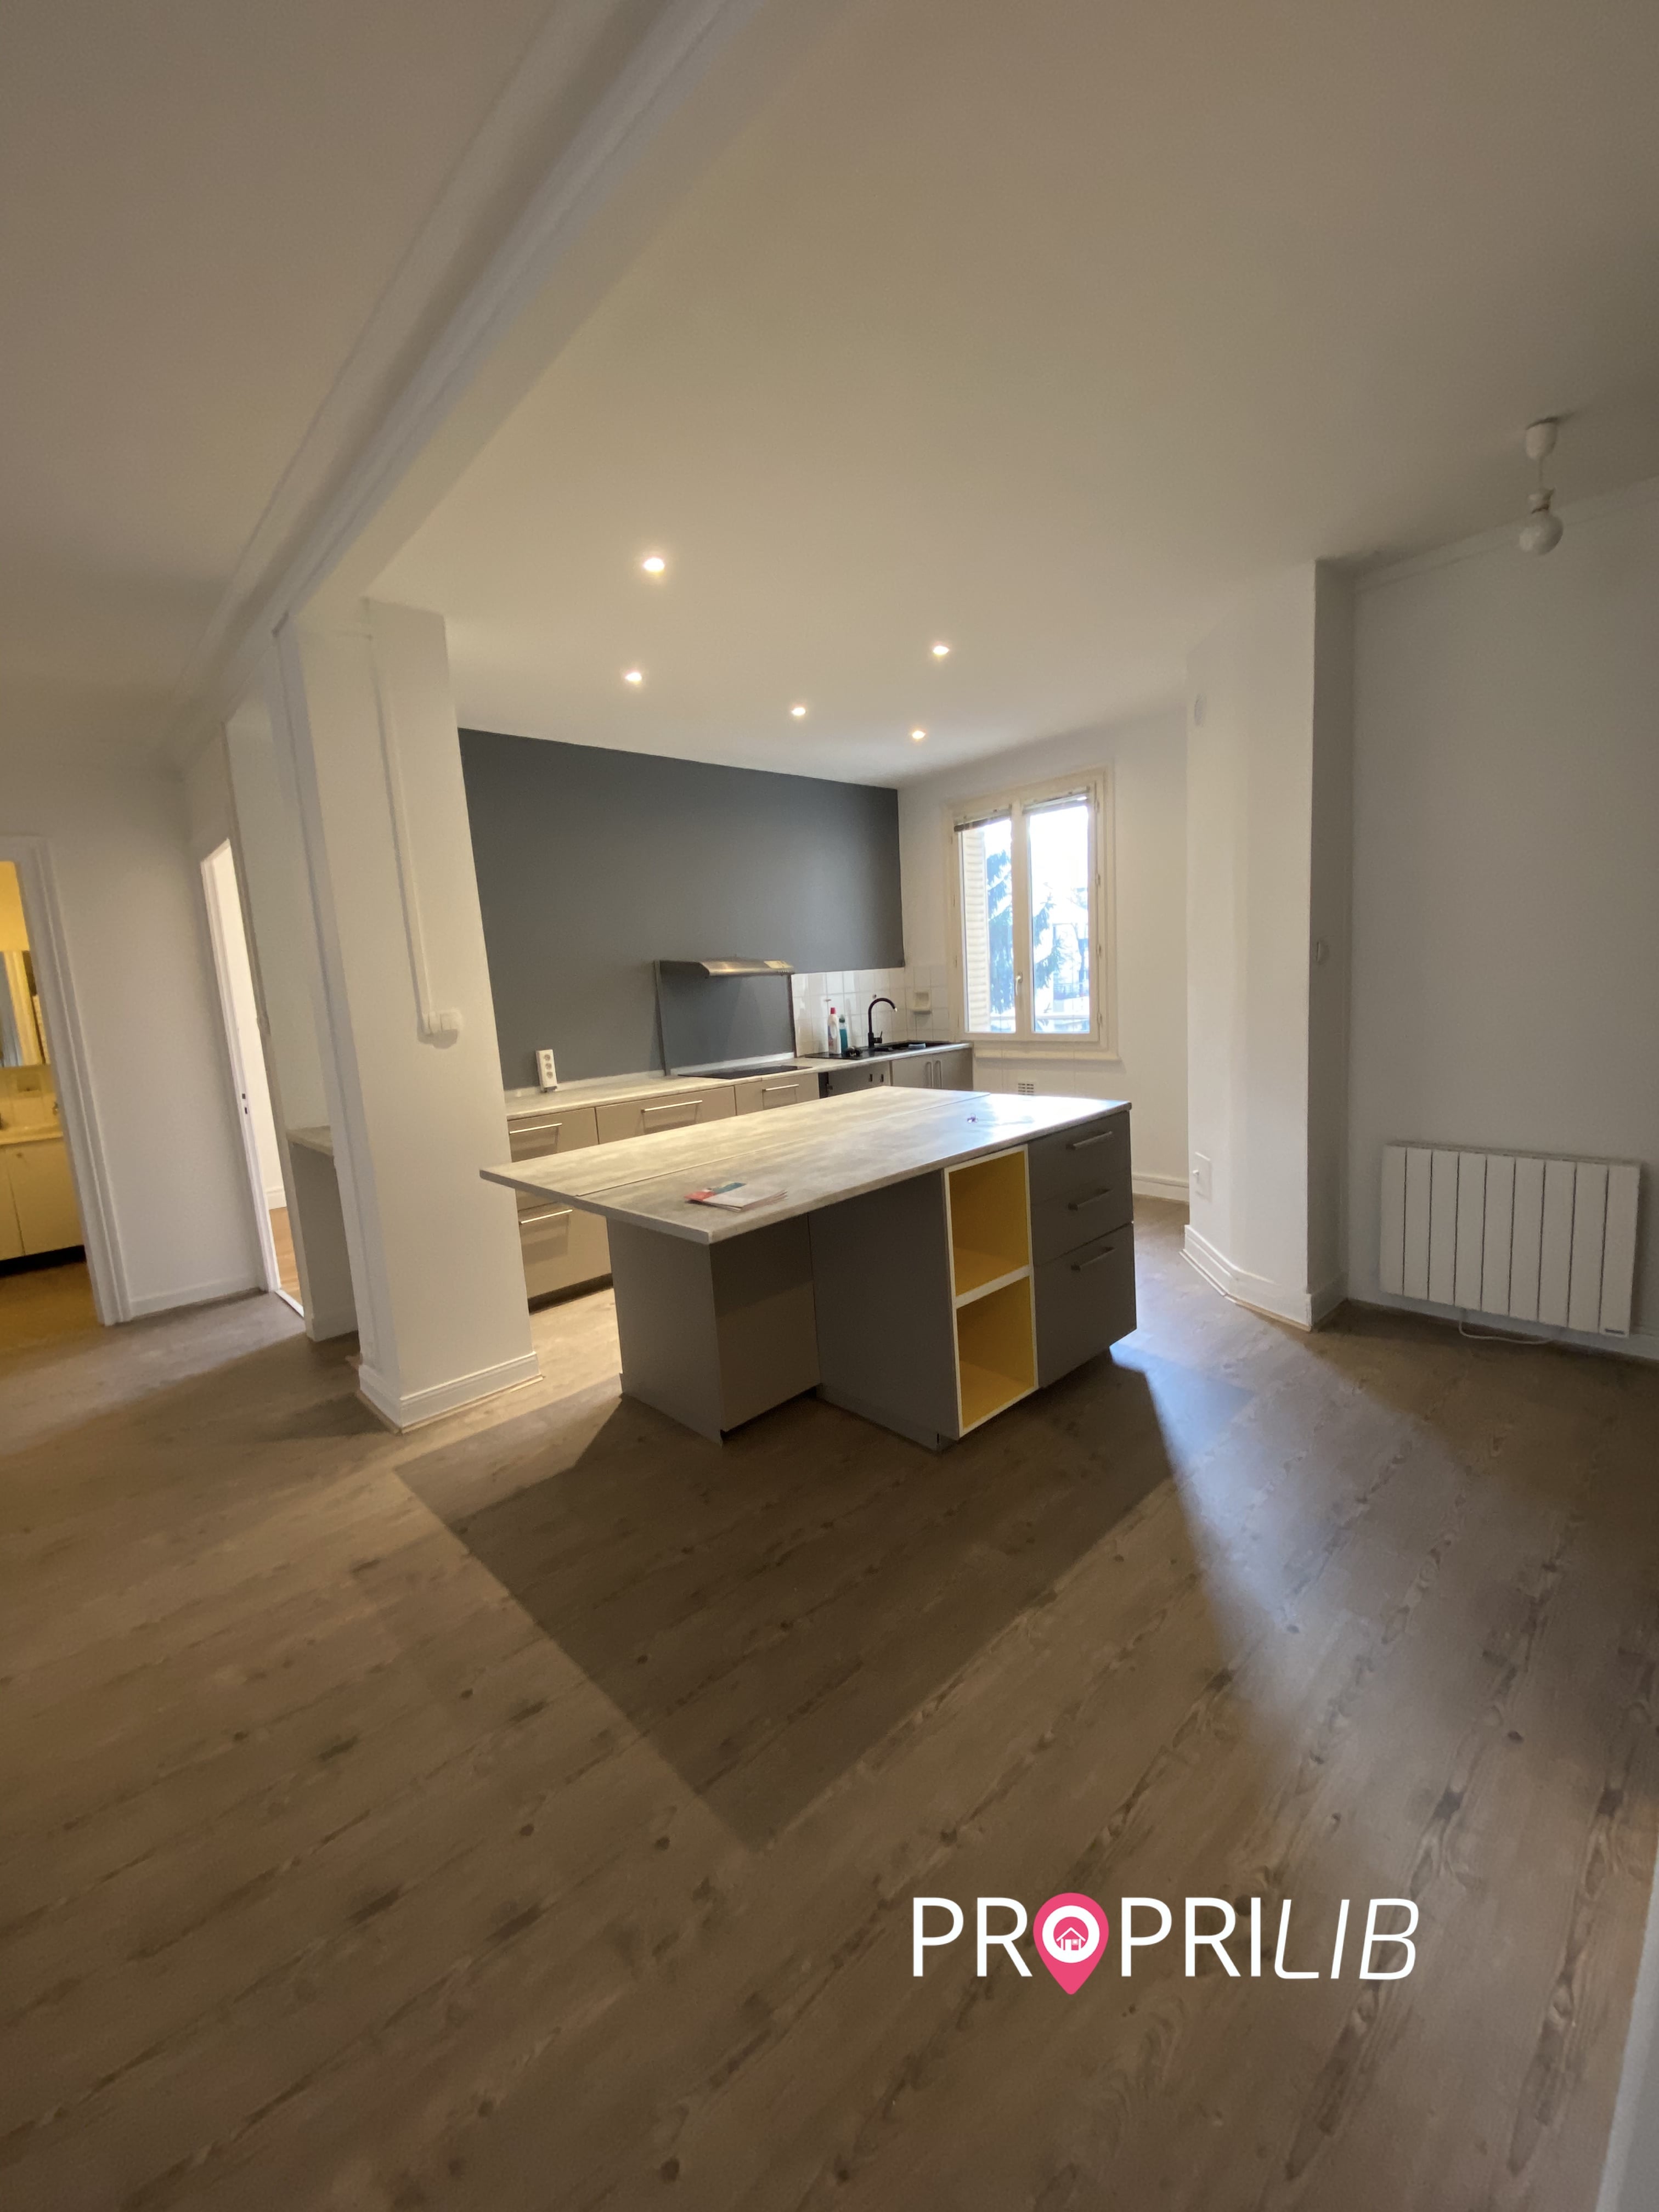 PropriLib l’agence immobilière en ligne au forfait vend cet appartement dans Lyon 3ème